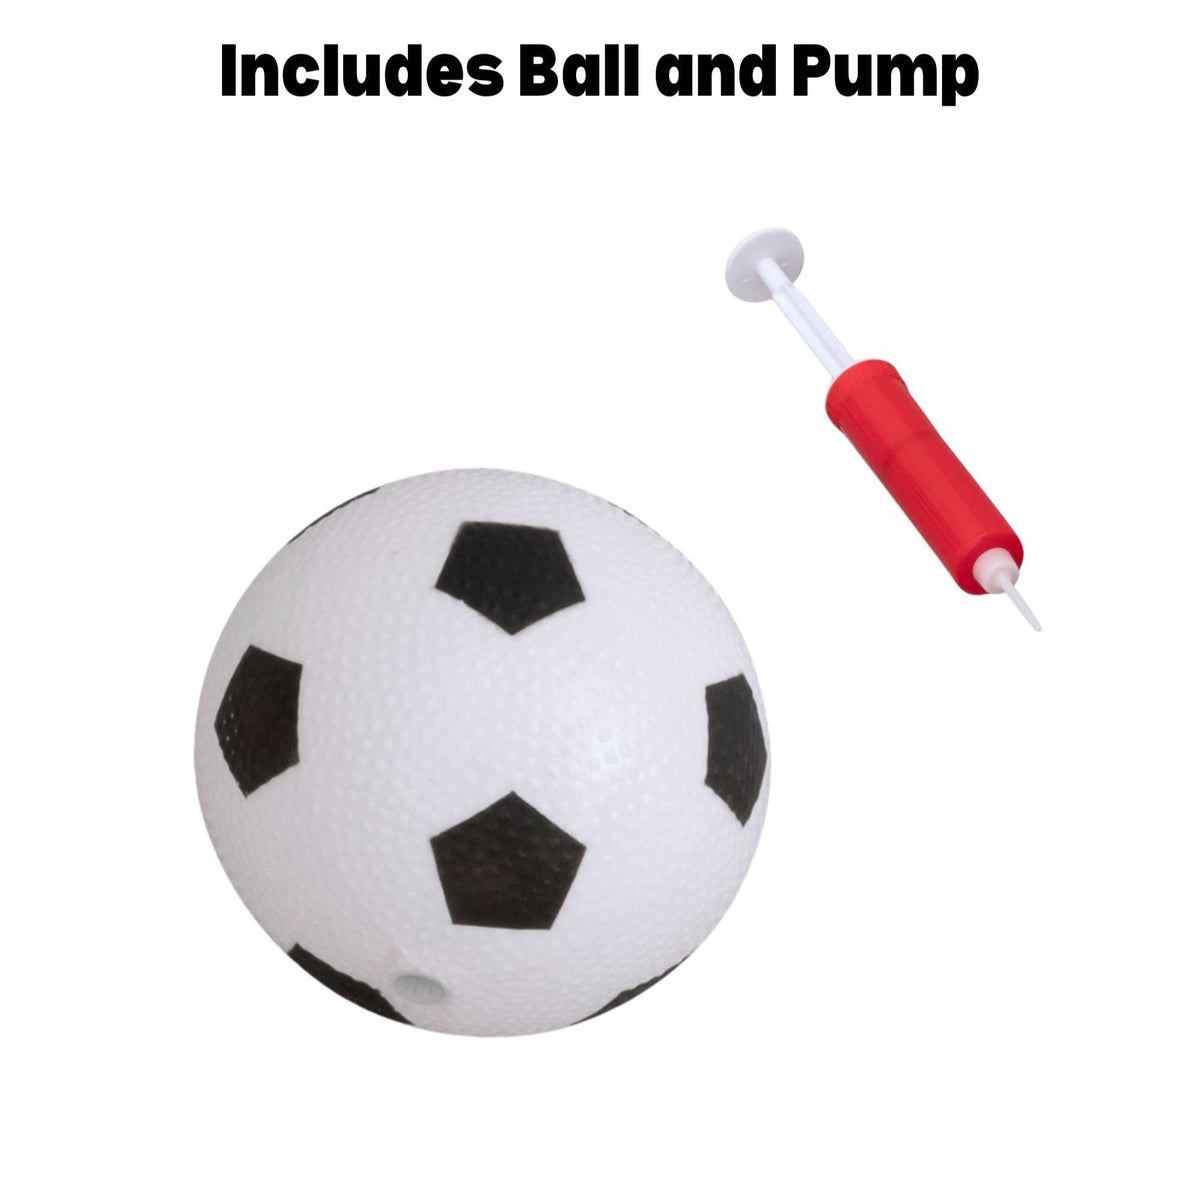 Fun Sport 90CM Football Net Set - Includes Football &amp; Ball Pump